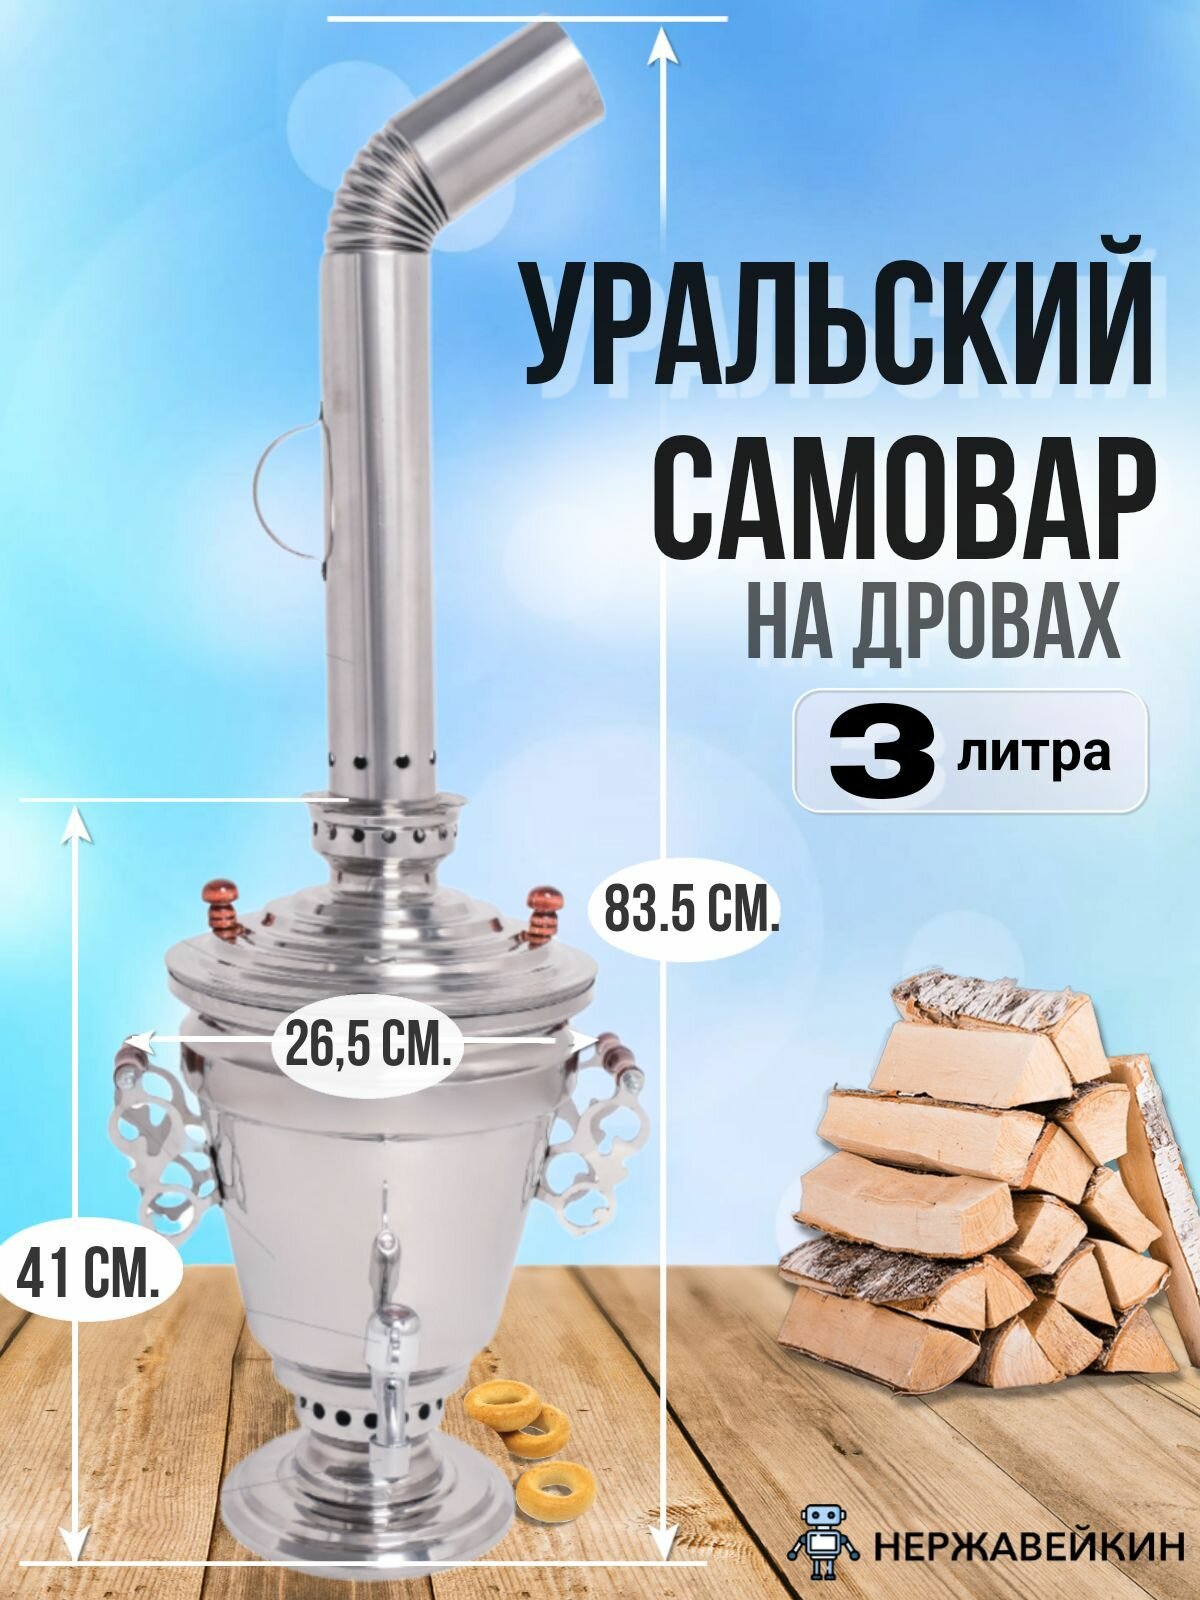 Уральский самовар из нержавеющей стали на дровах 3 литров, СамГони